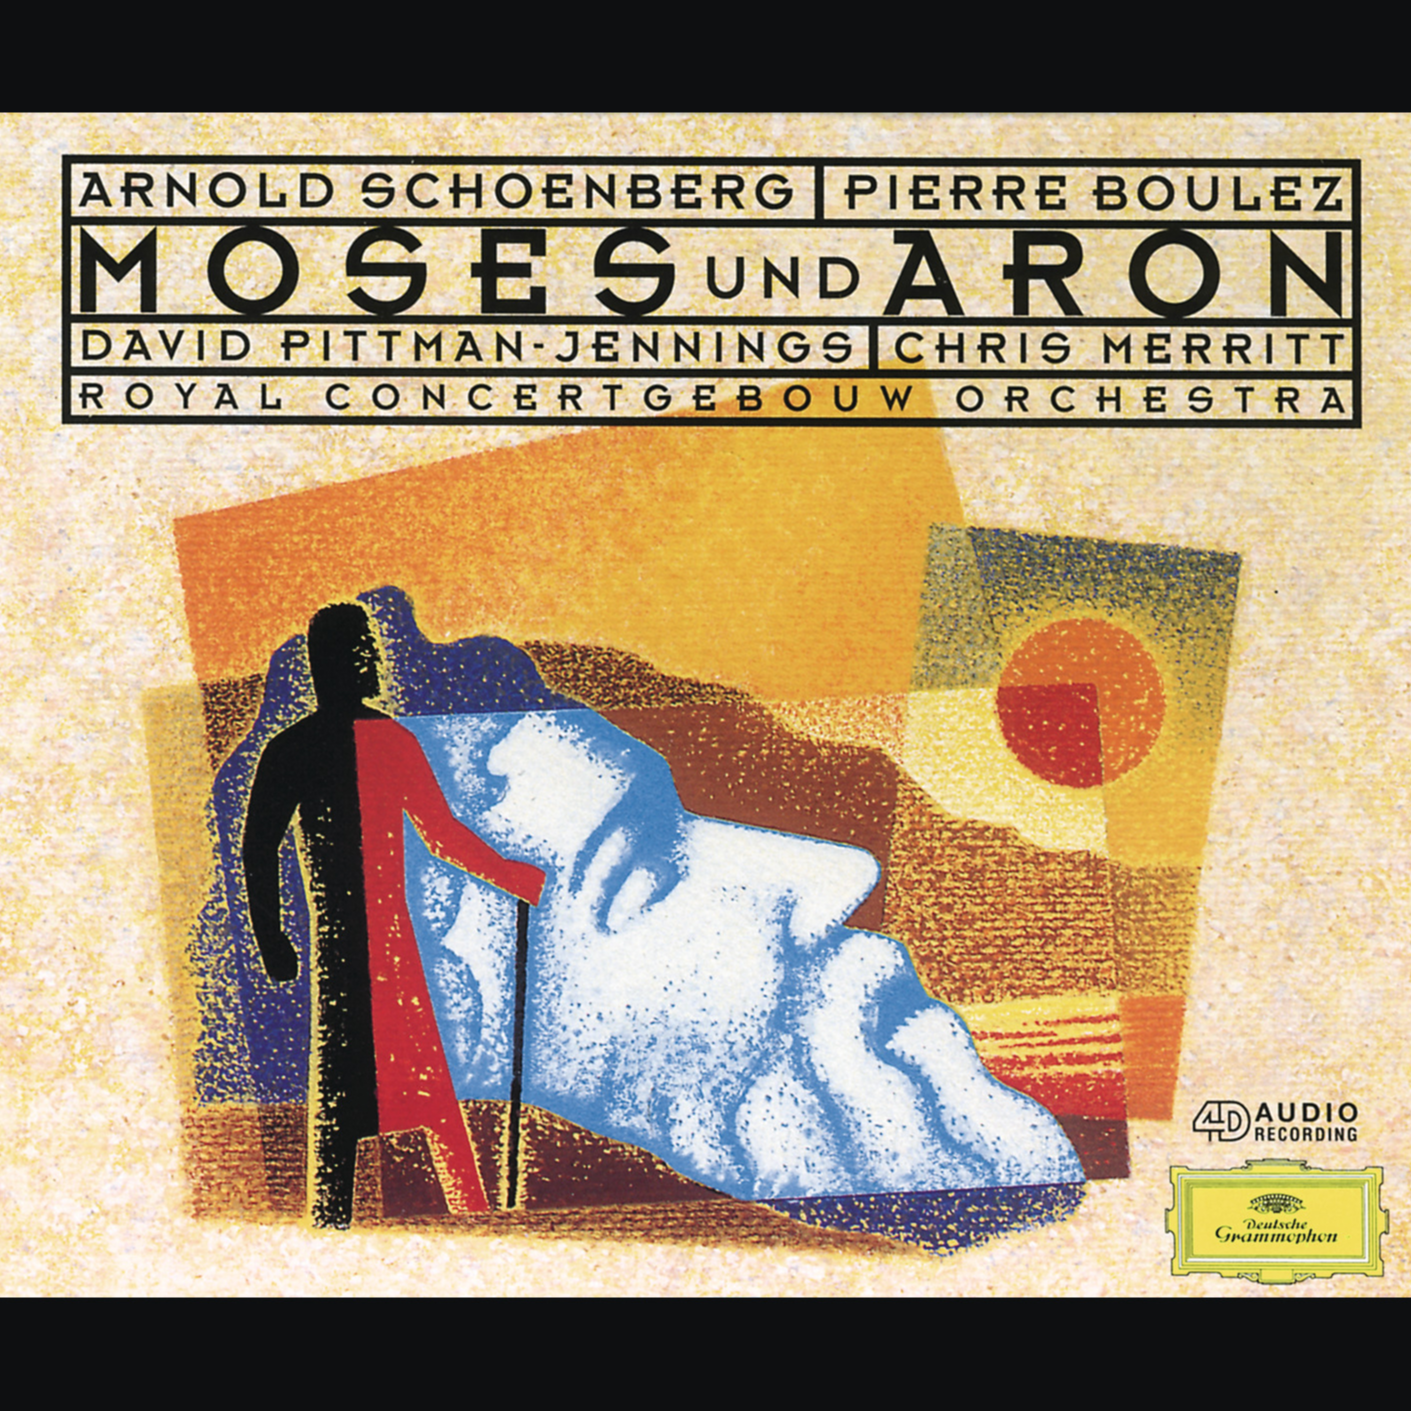 Concertgebouworkest - Moses Und Aron - Original Version / Act 1:Er Hat Uns Auserw?hlt (Chor)